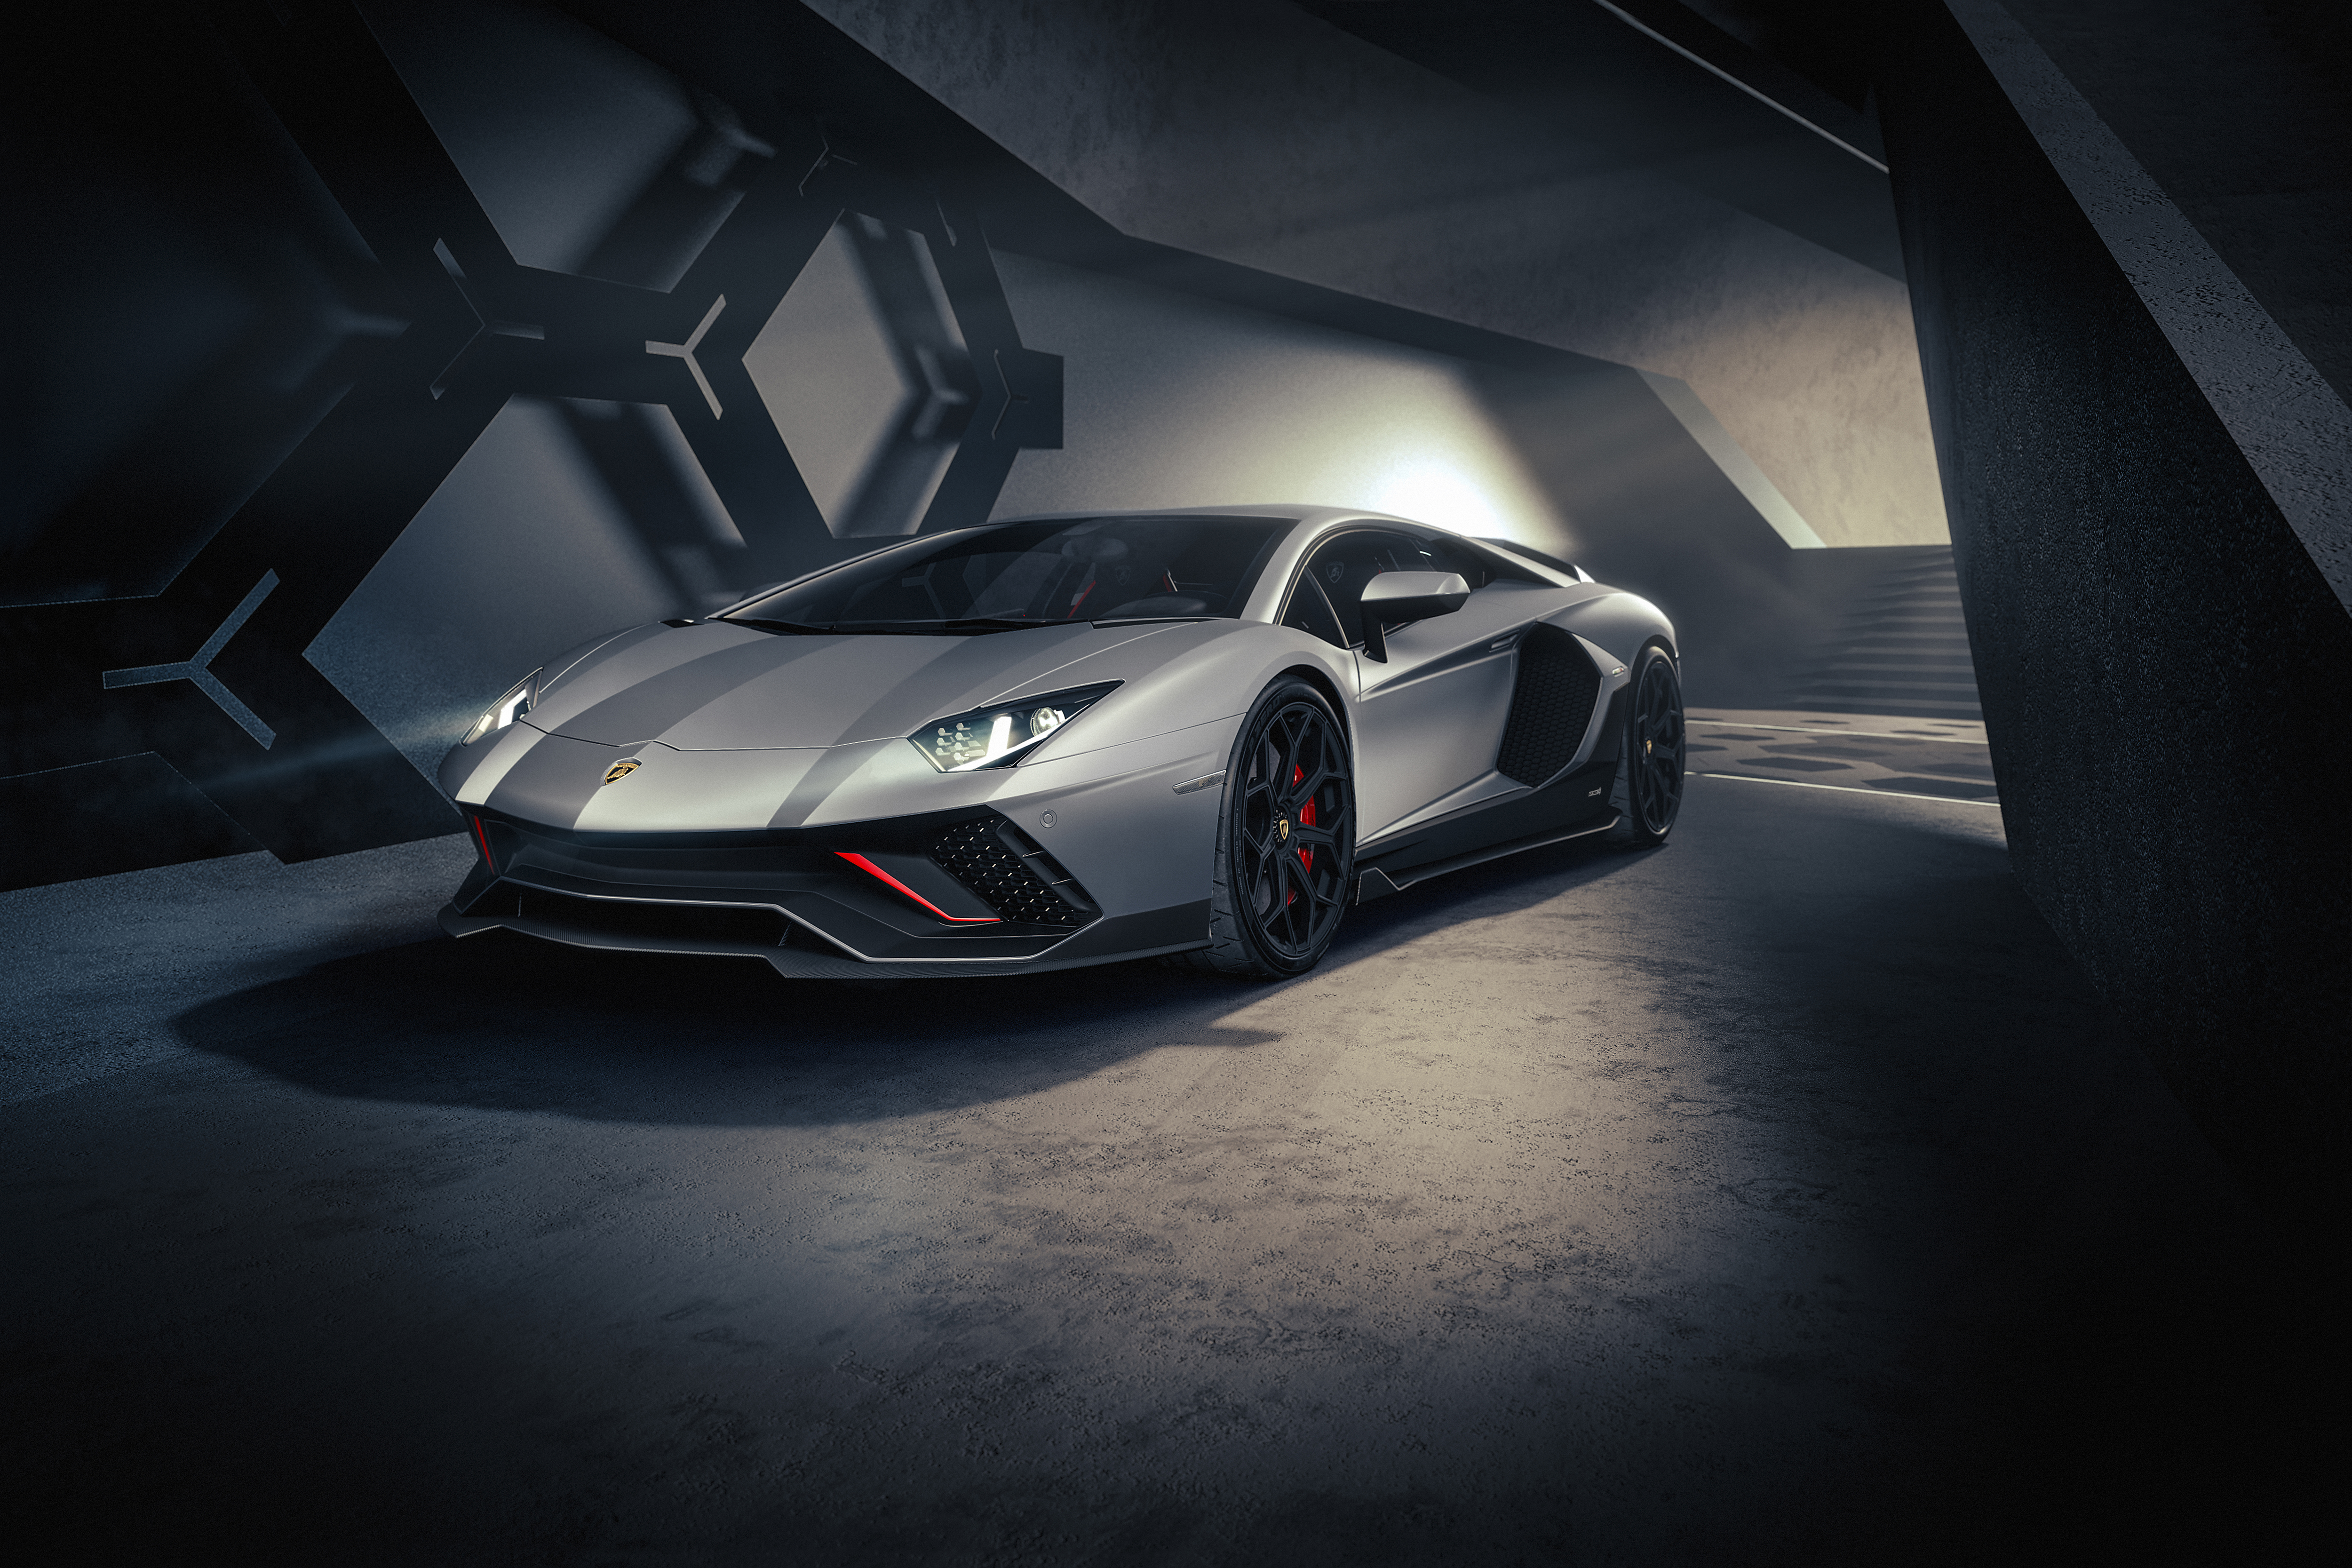 Meilleurs fonds d'écran Lamborghini Aventador Lp 780 4 Ultimae pour l'écran du téléphone